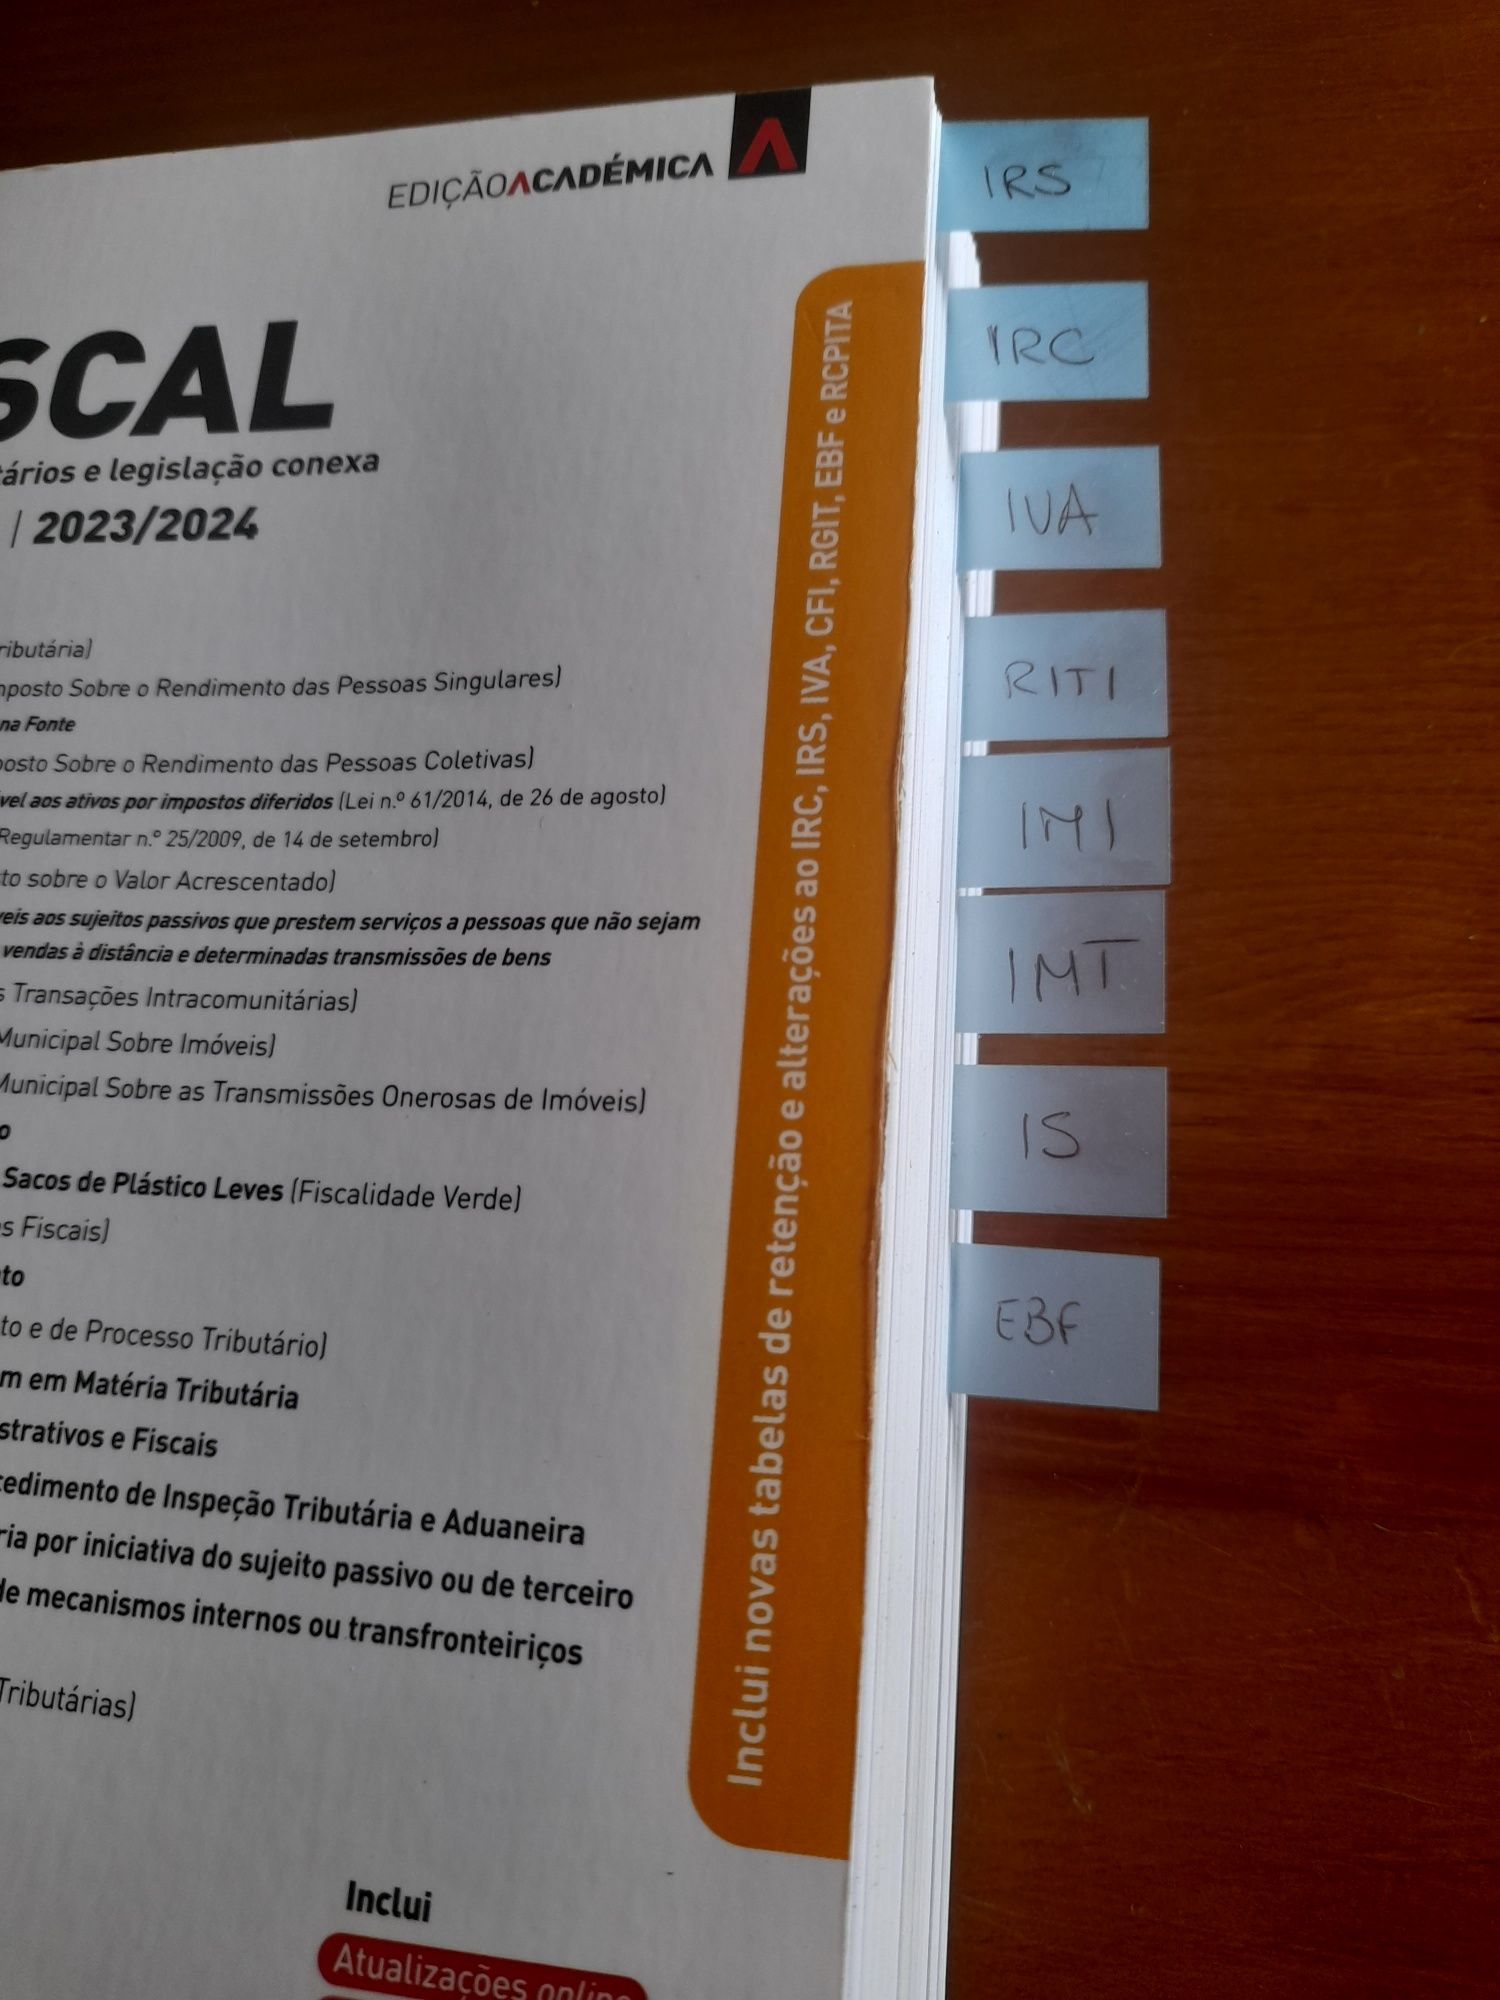 Código Fiscal 2023/2024 - Edição Académica